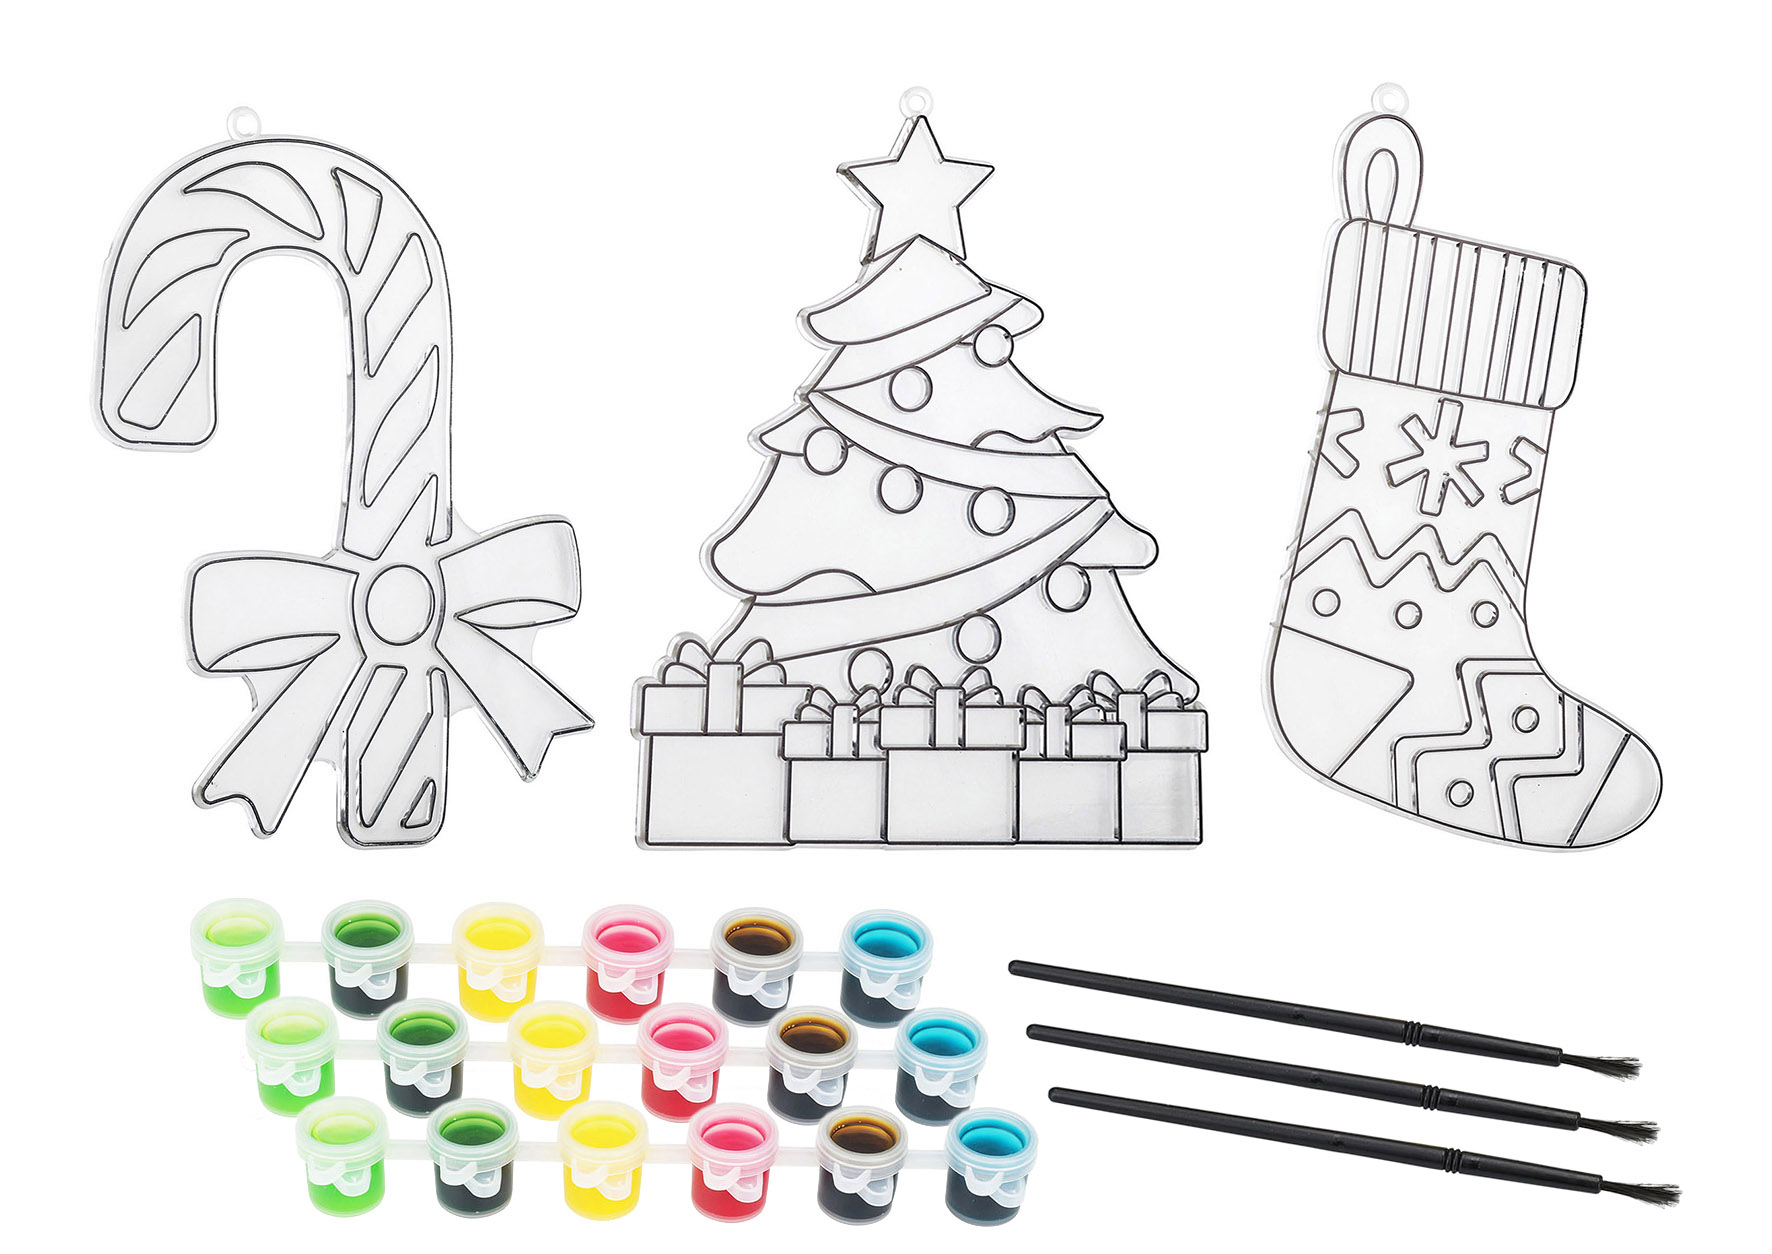 Weihnachts Fensterbilder zum Ausmalen - 3er Set - Malset mit 3 Bildern inklusive Farben und Pinsel - Weihnachtsdeko Fensterdekoration zum selbst Gestalten Ausmalbild Komplett Set mit 3 Motiven